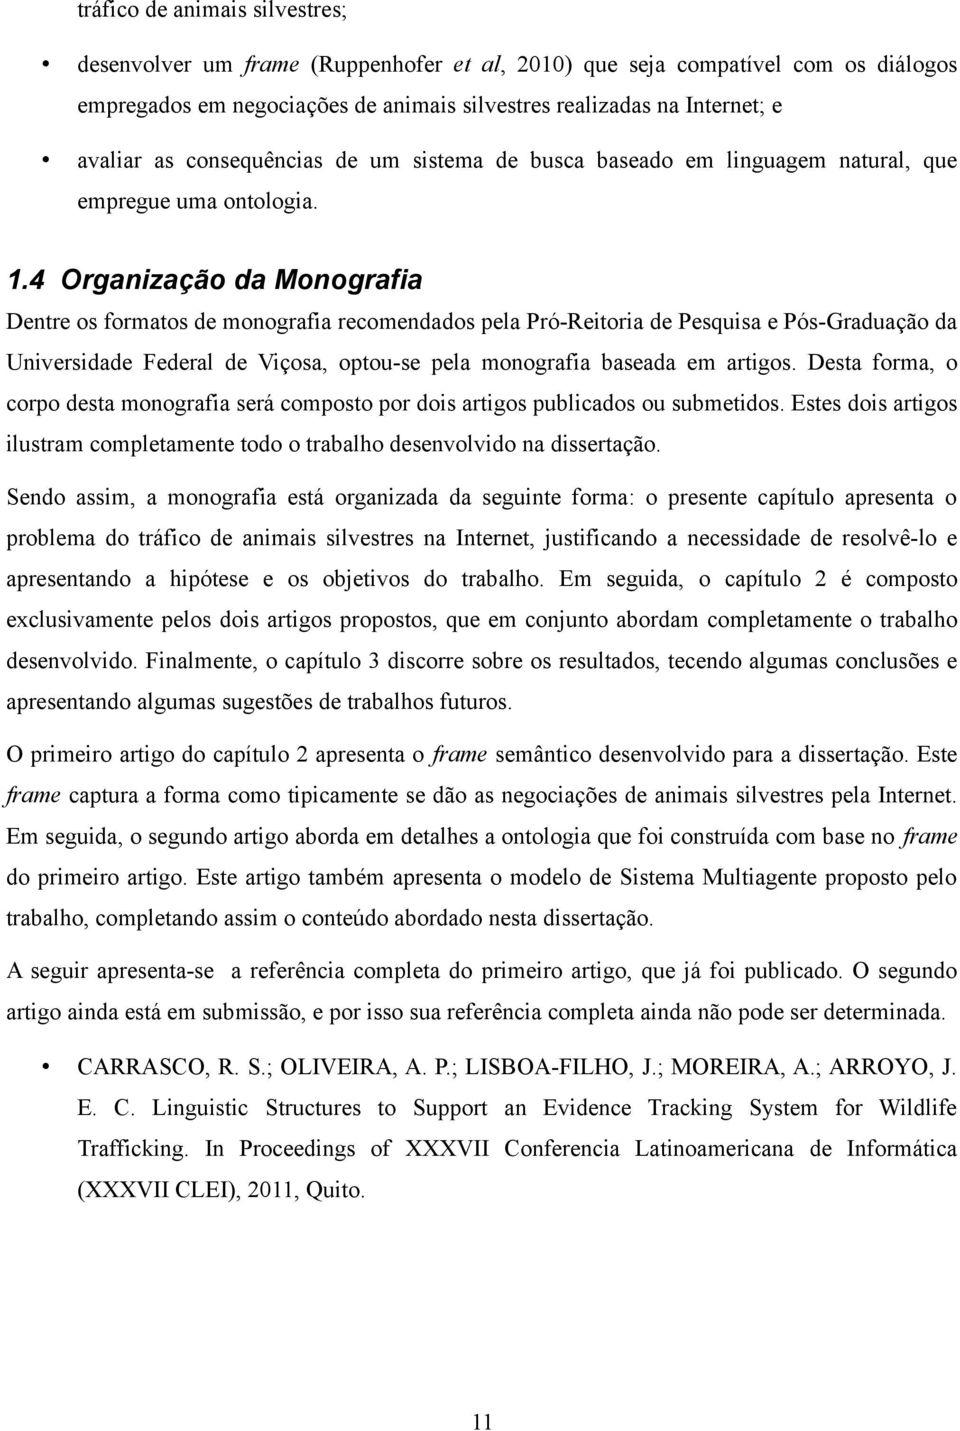 4 Organização da Monografia Dentre os formatos de monografia recomendados pela Pró-Reitoria de Pesquisa e Pós-Graduação da Universidade Federal de Viçosa, optou-se pela monografia baseada em artigos.